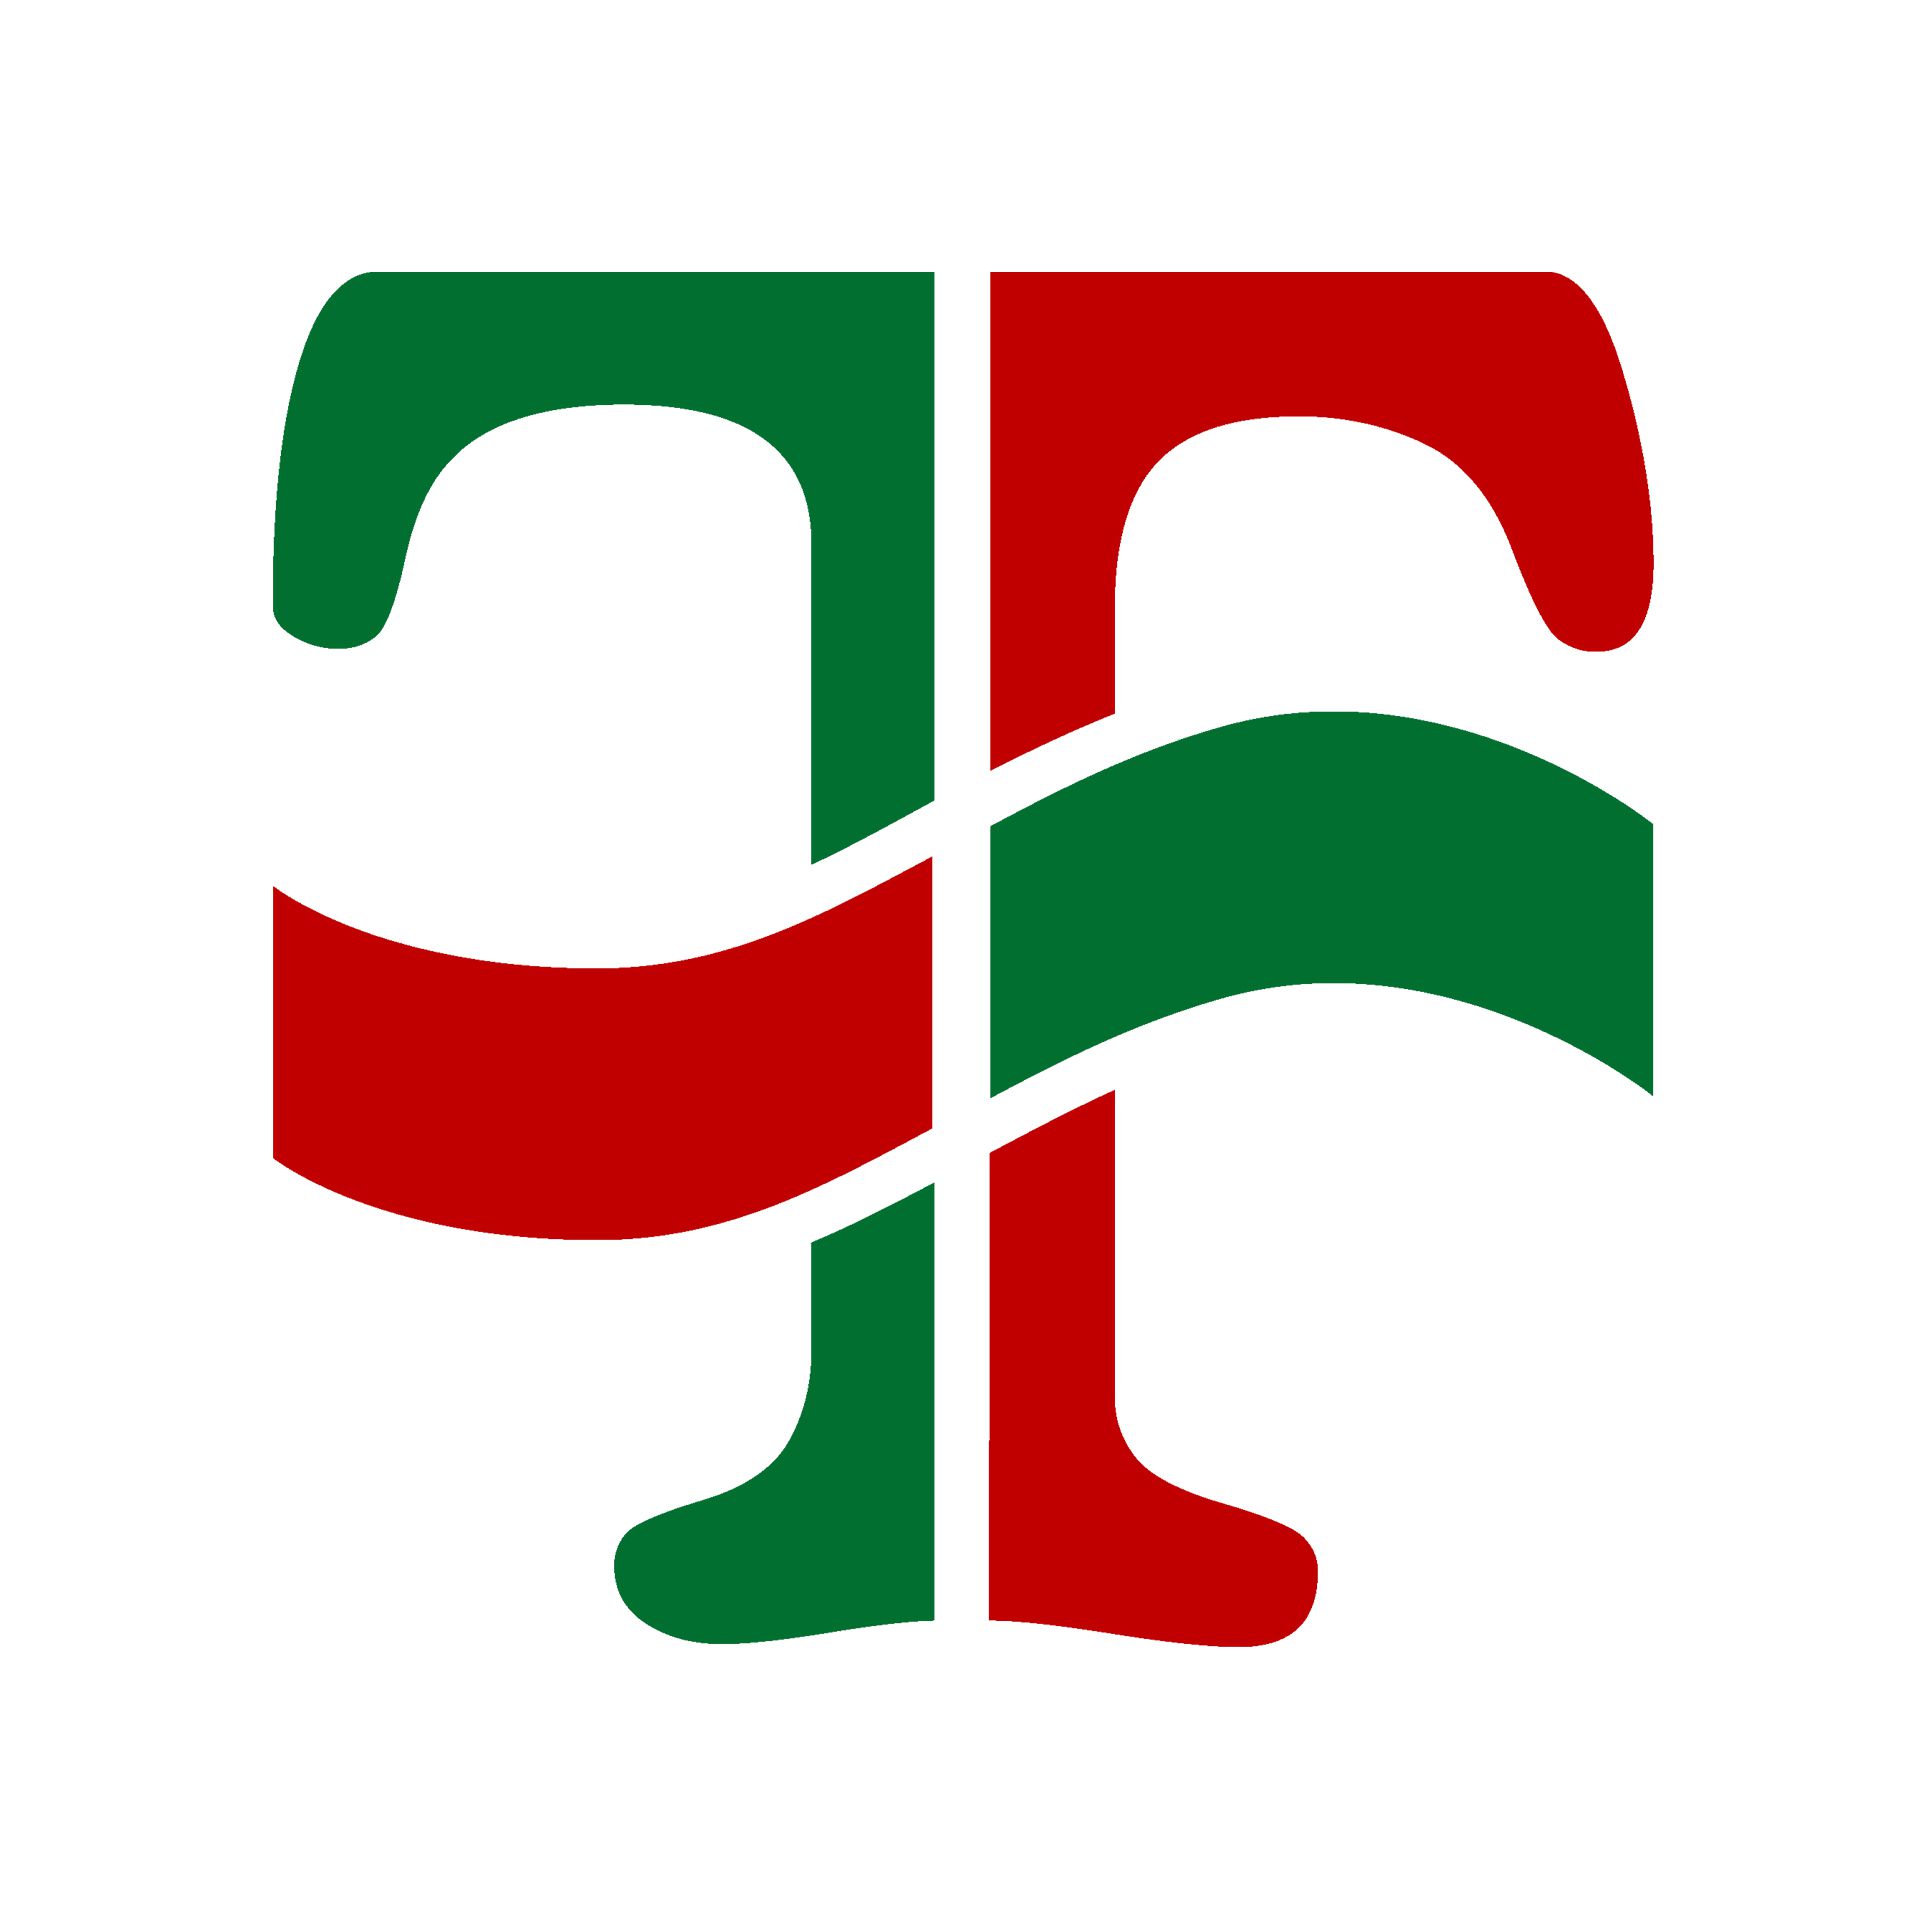 Terencio Supermercados Logo